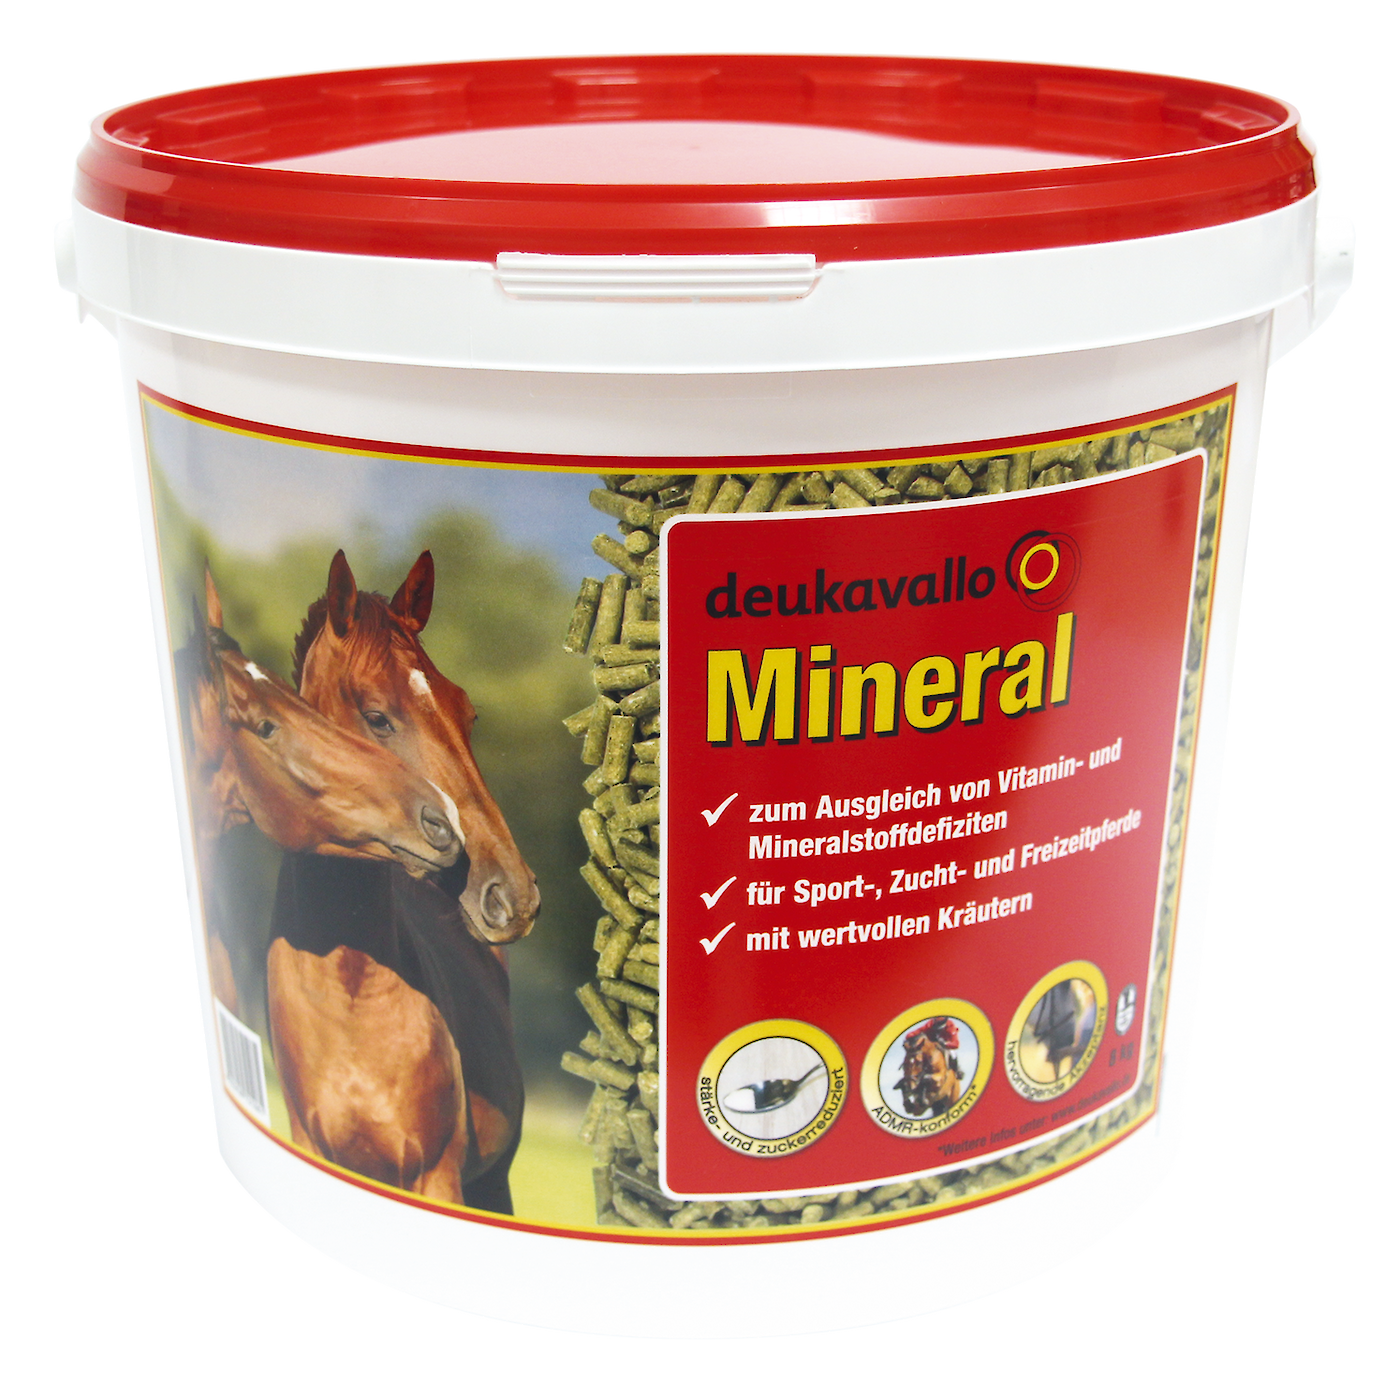 Um den Magnesiumbedarf von Sportpferden zu decken, ist eine zusätzliche Gabe von Mineralfuttern wie deukavallo Mineral sinnvoll (© Deutsche Tiernahrung Cremer).